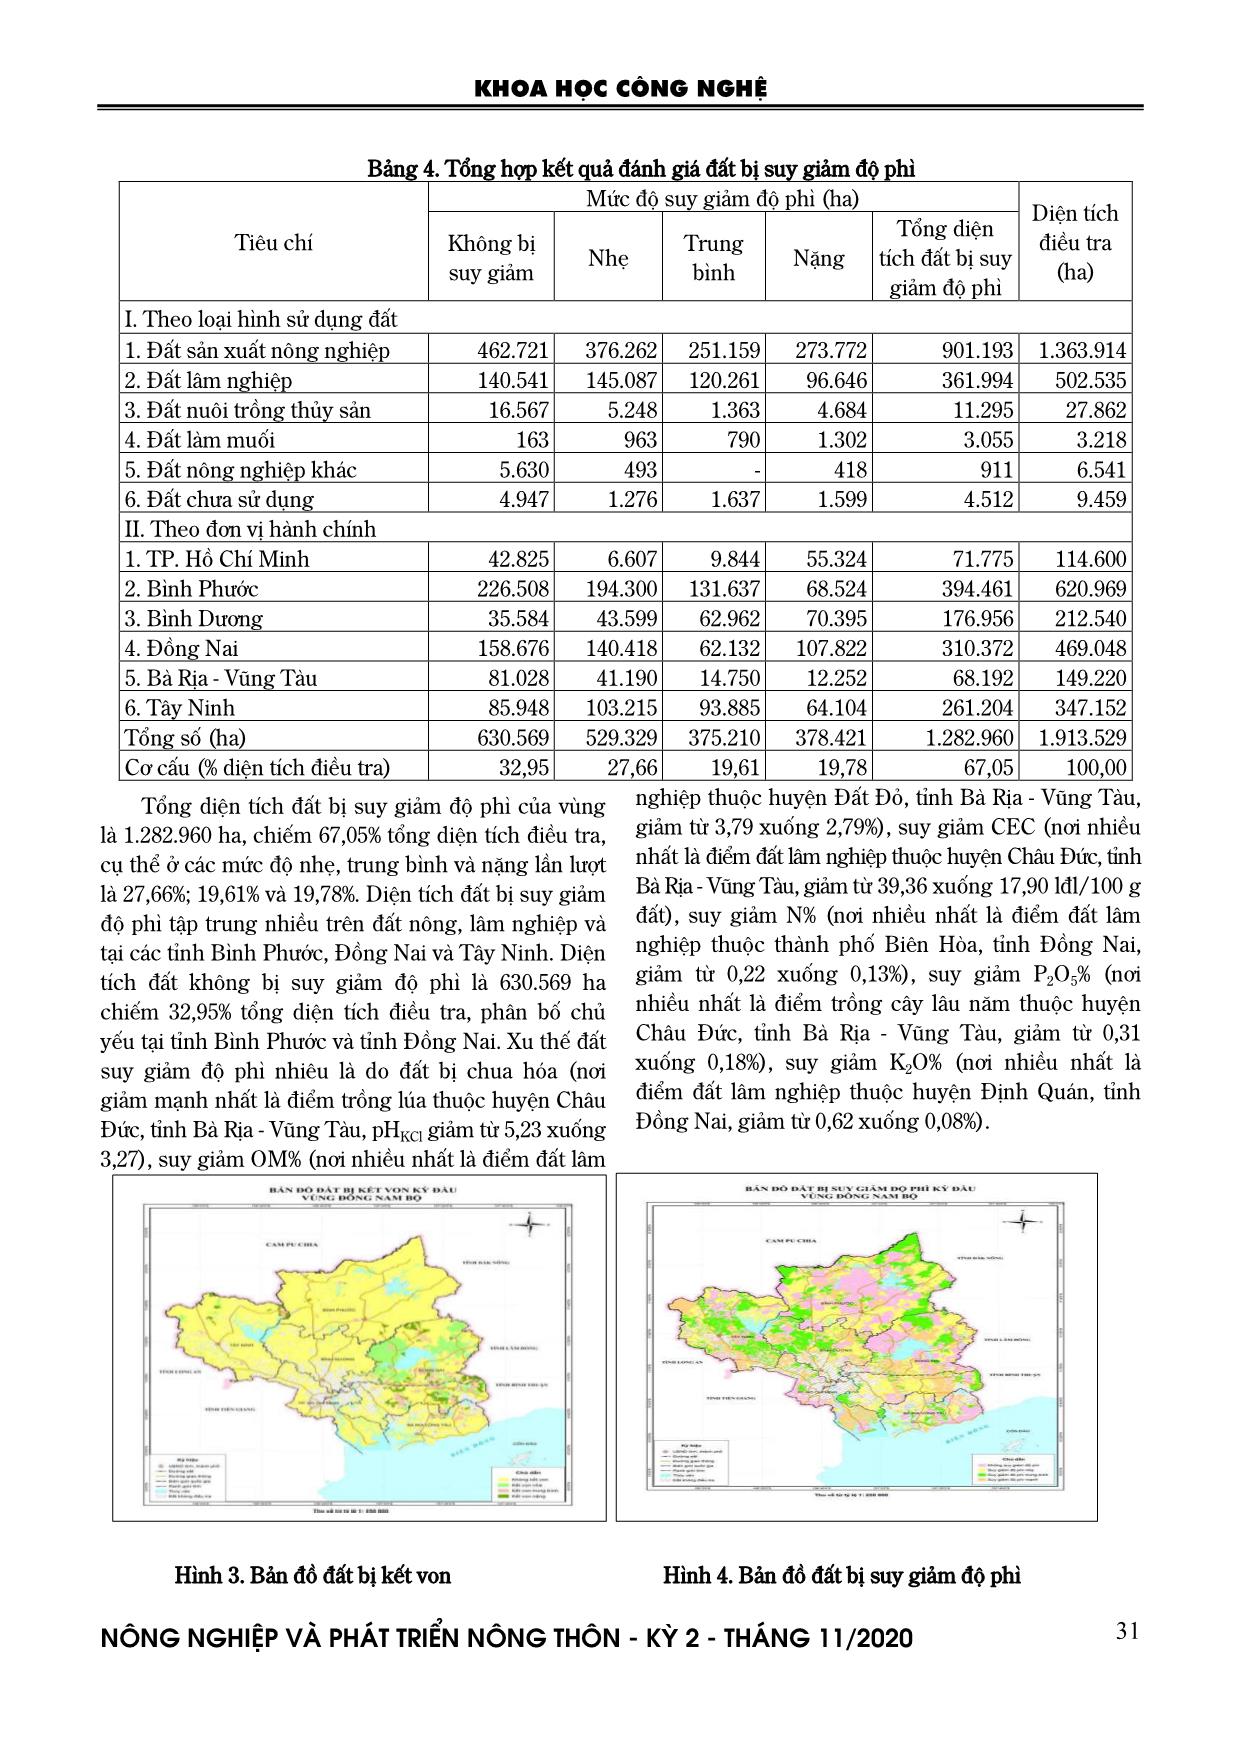 Thực trạng thoái hóa đất vùng Đông Nam Bộ trang 5